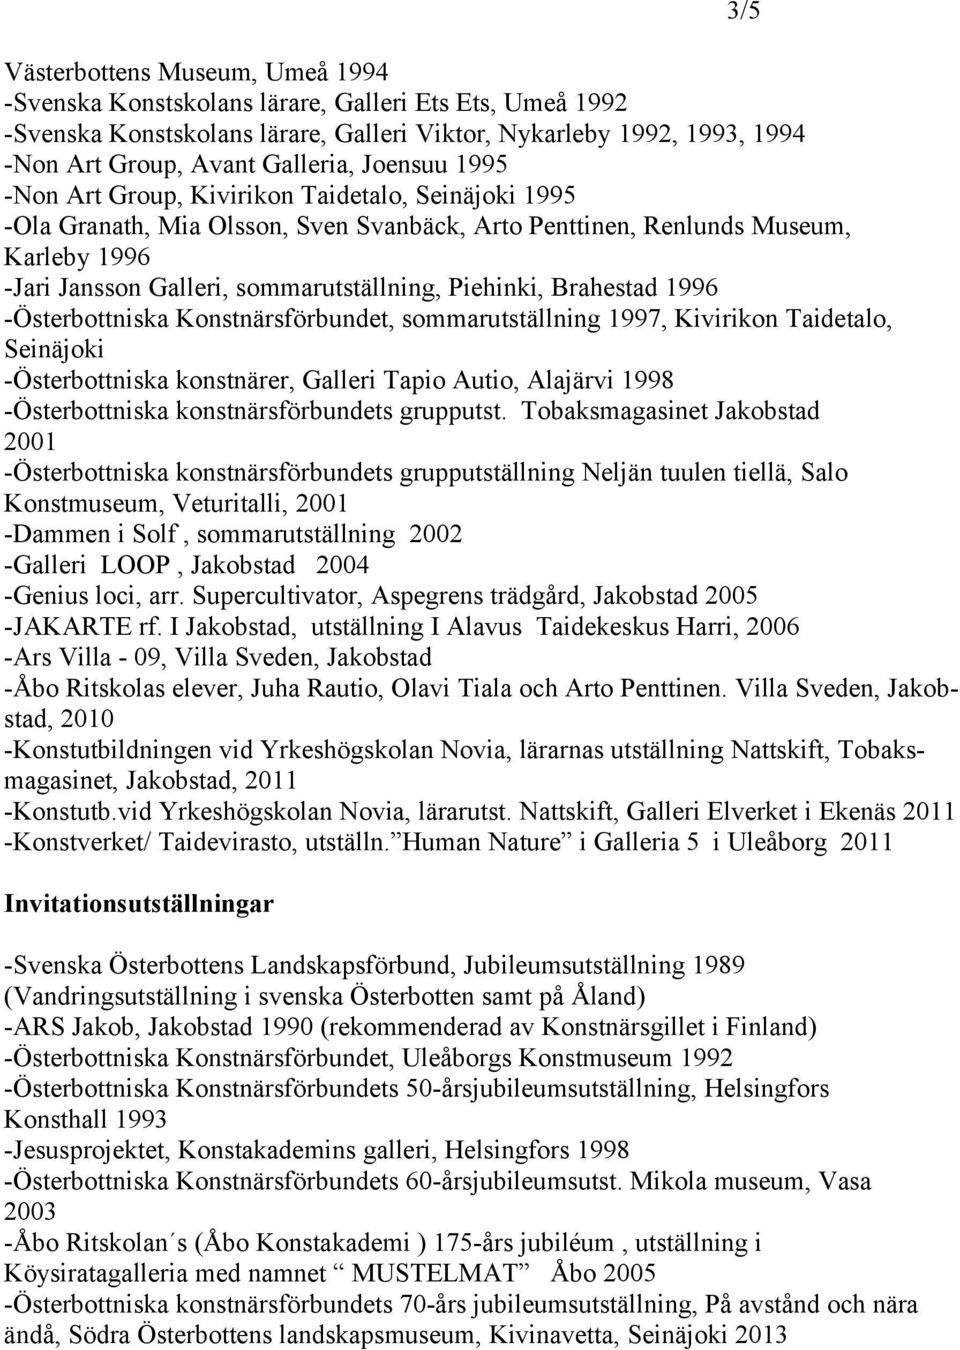 Piehinki, Brahestad 1996 -Österbottniska Konstnärsförbundet, sommarutställning 1997, Kivirikon Taidetalo, Seinäjoki -Österbottniska konstnärer, Galleri Tapio Autio, Alajärvi 1998 -Österbottniska